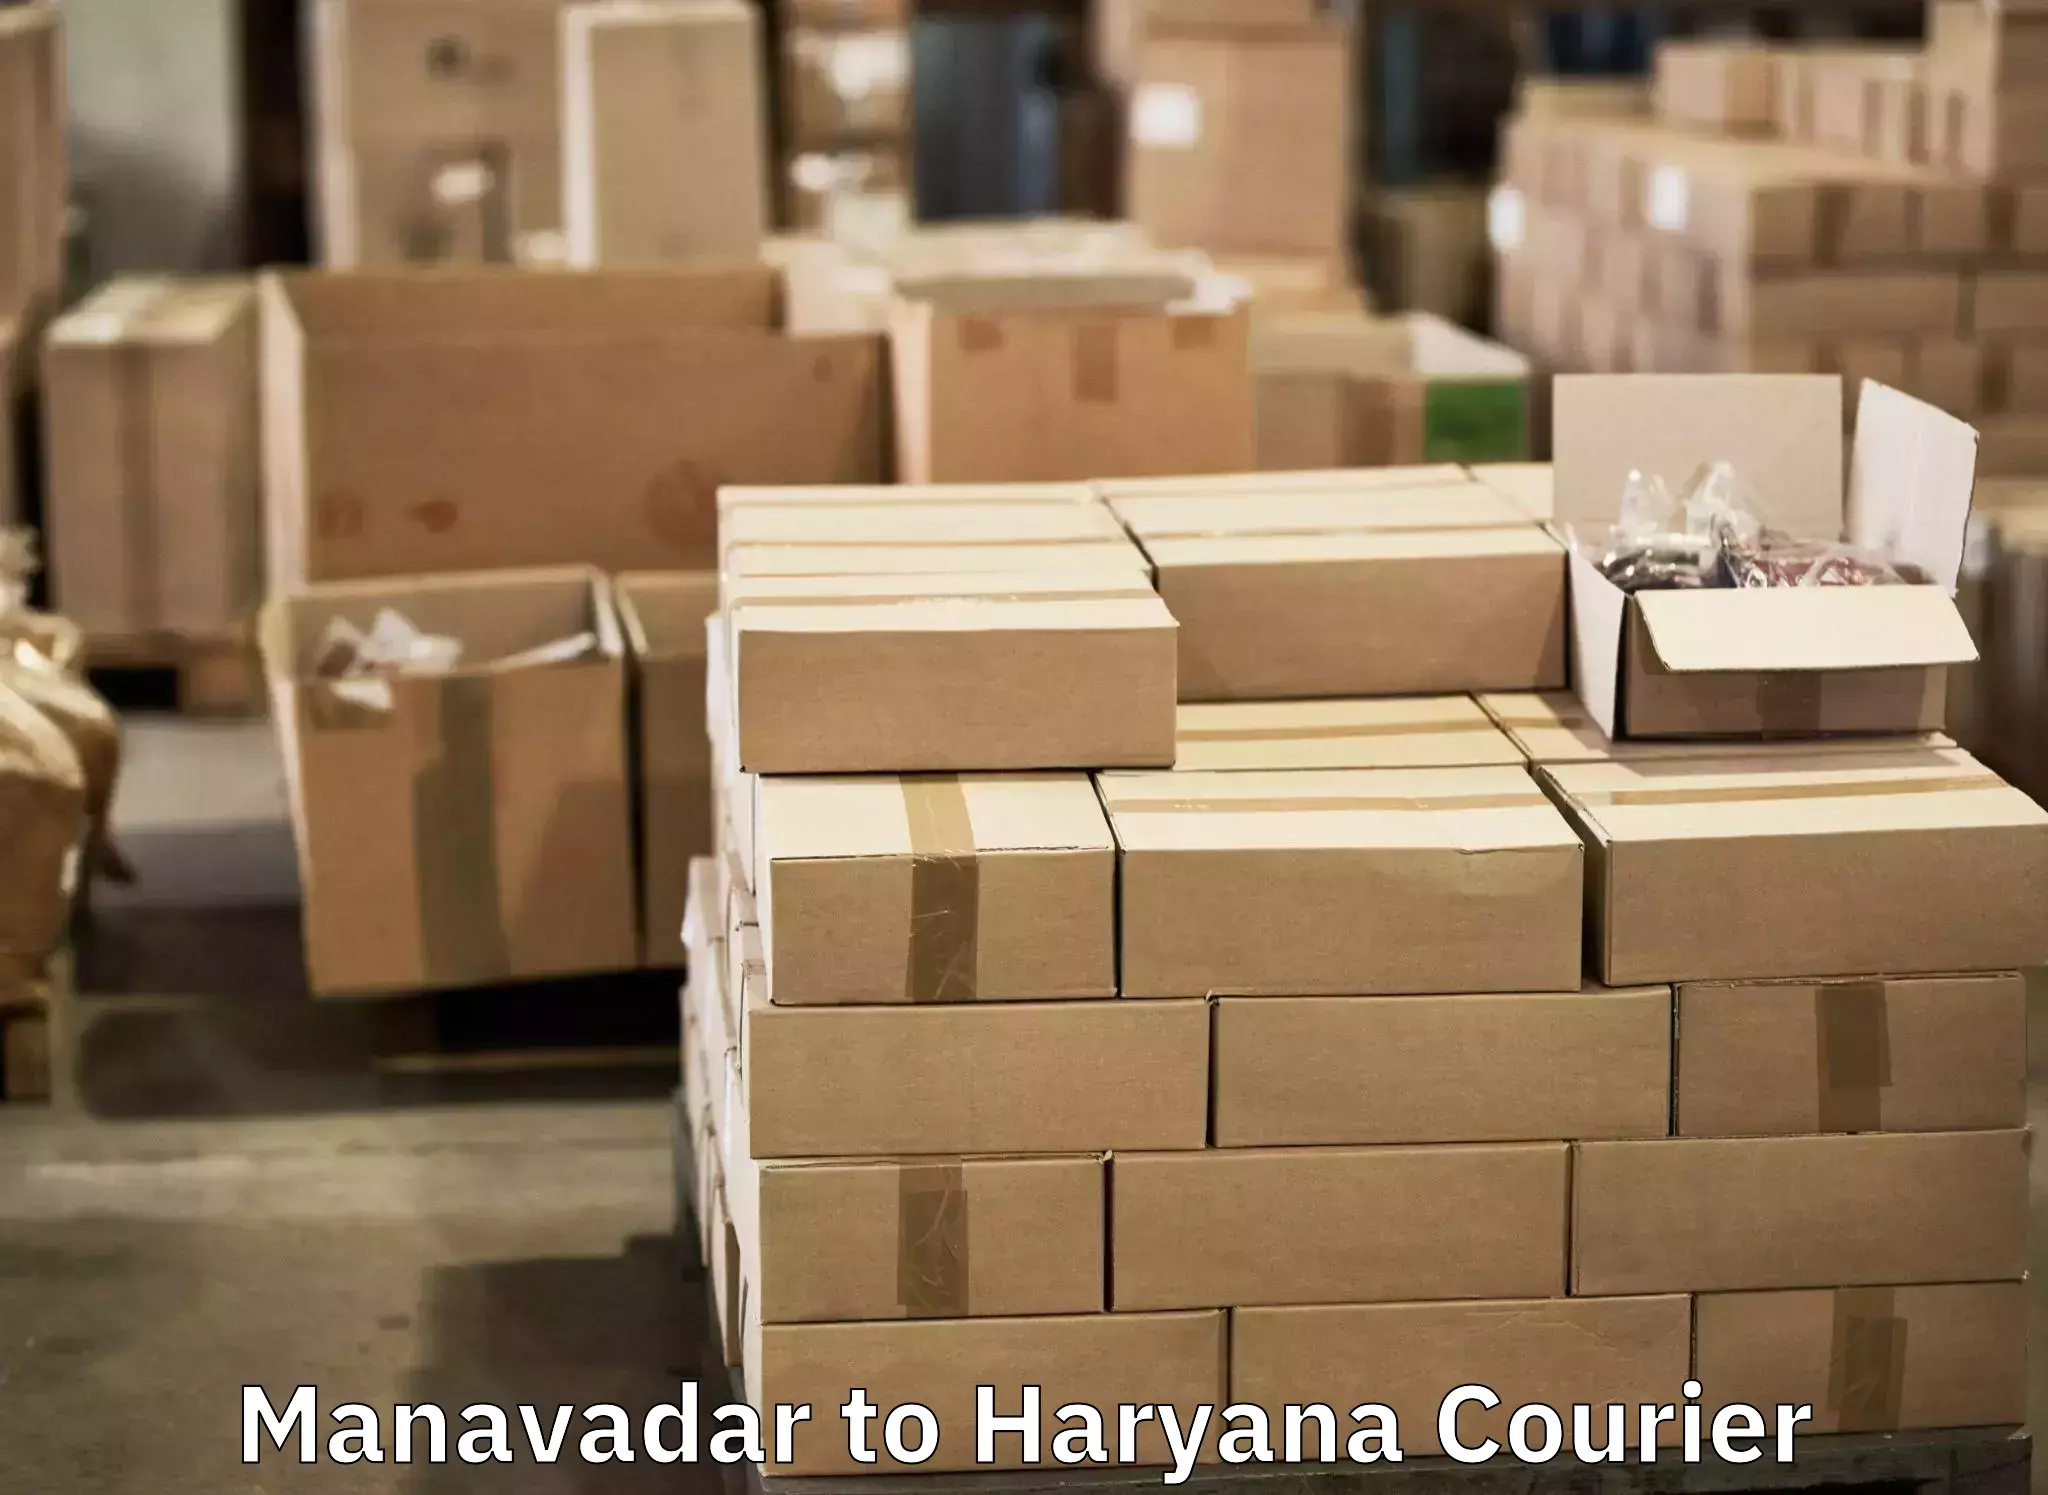 Luggage transfer service Manavadar to NCR Haryana